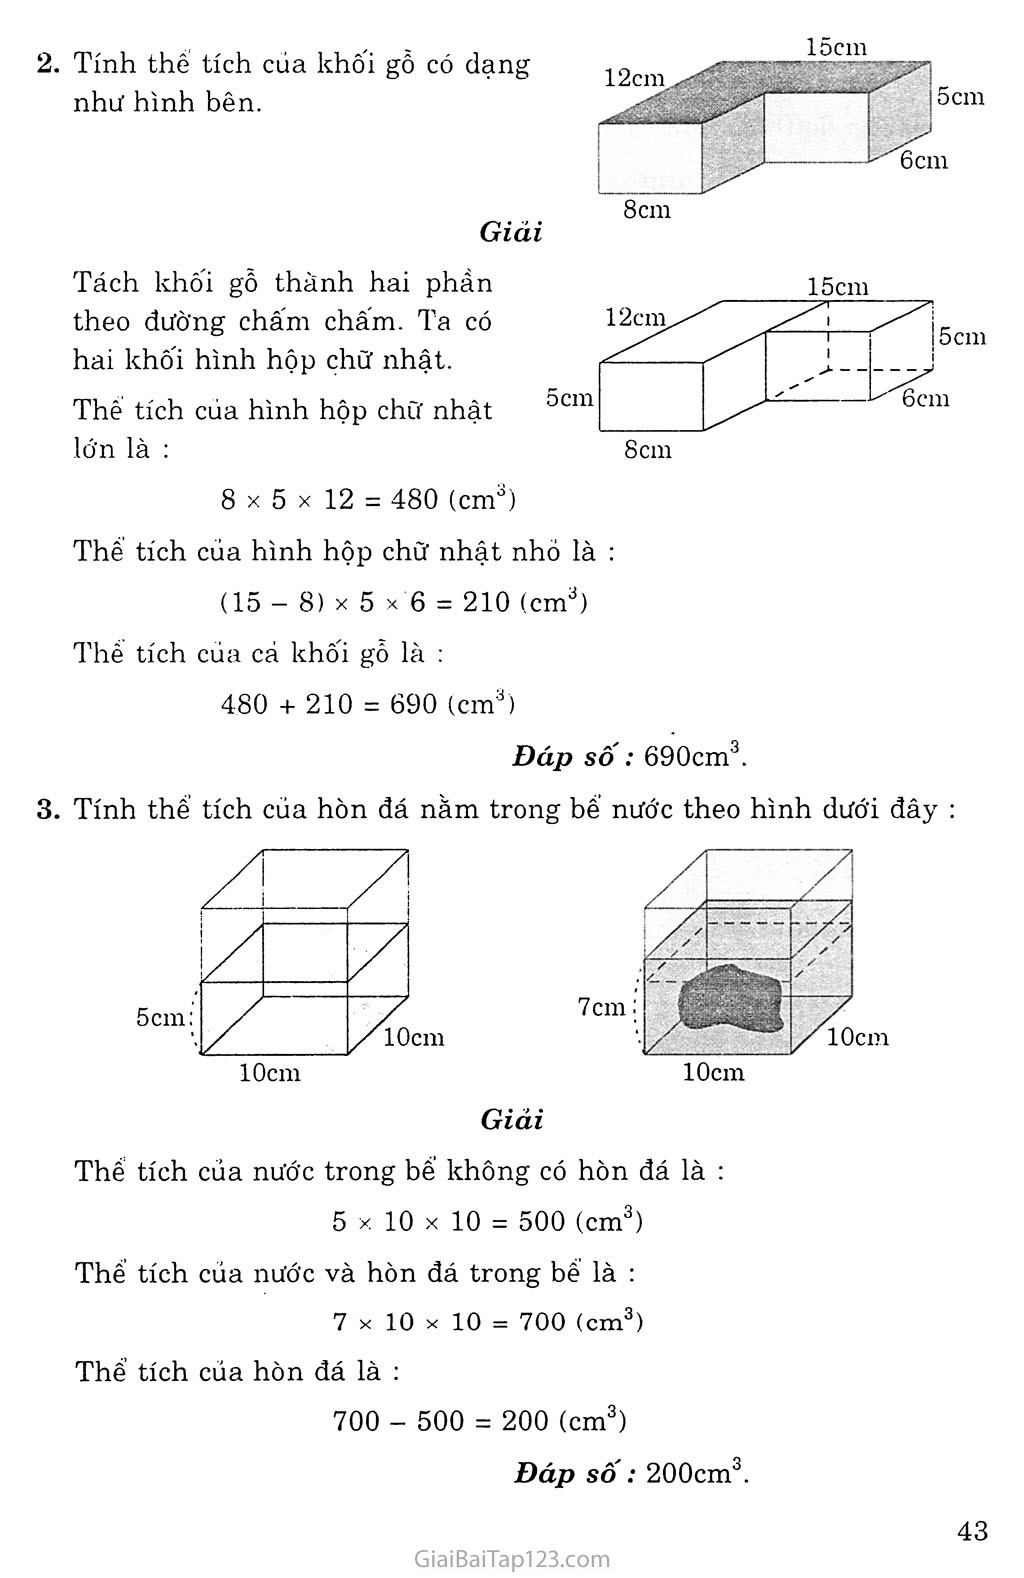 Giải bài tập Toán lớp 5: Thể tích hình hộp chữ nhật